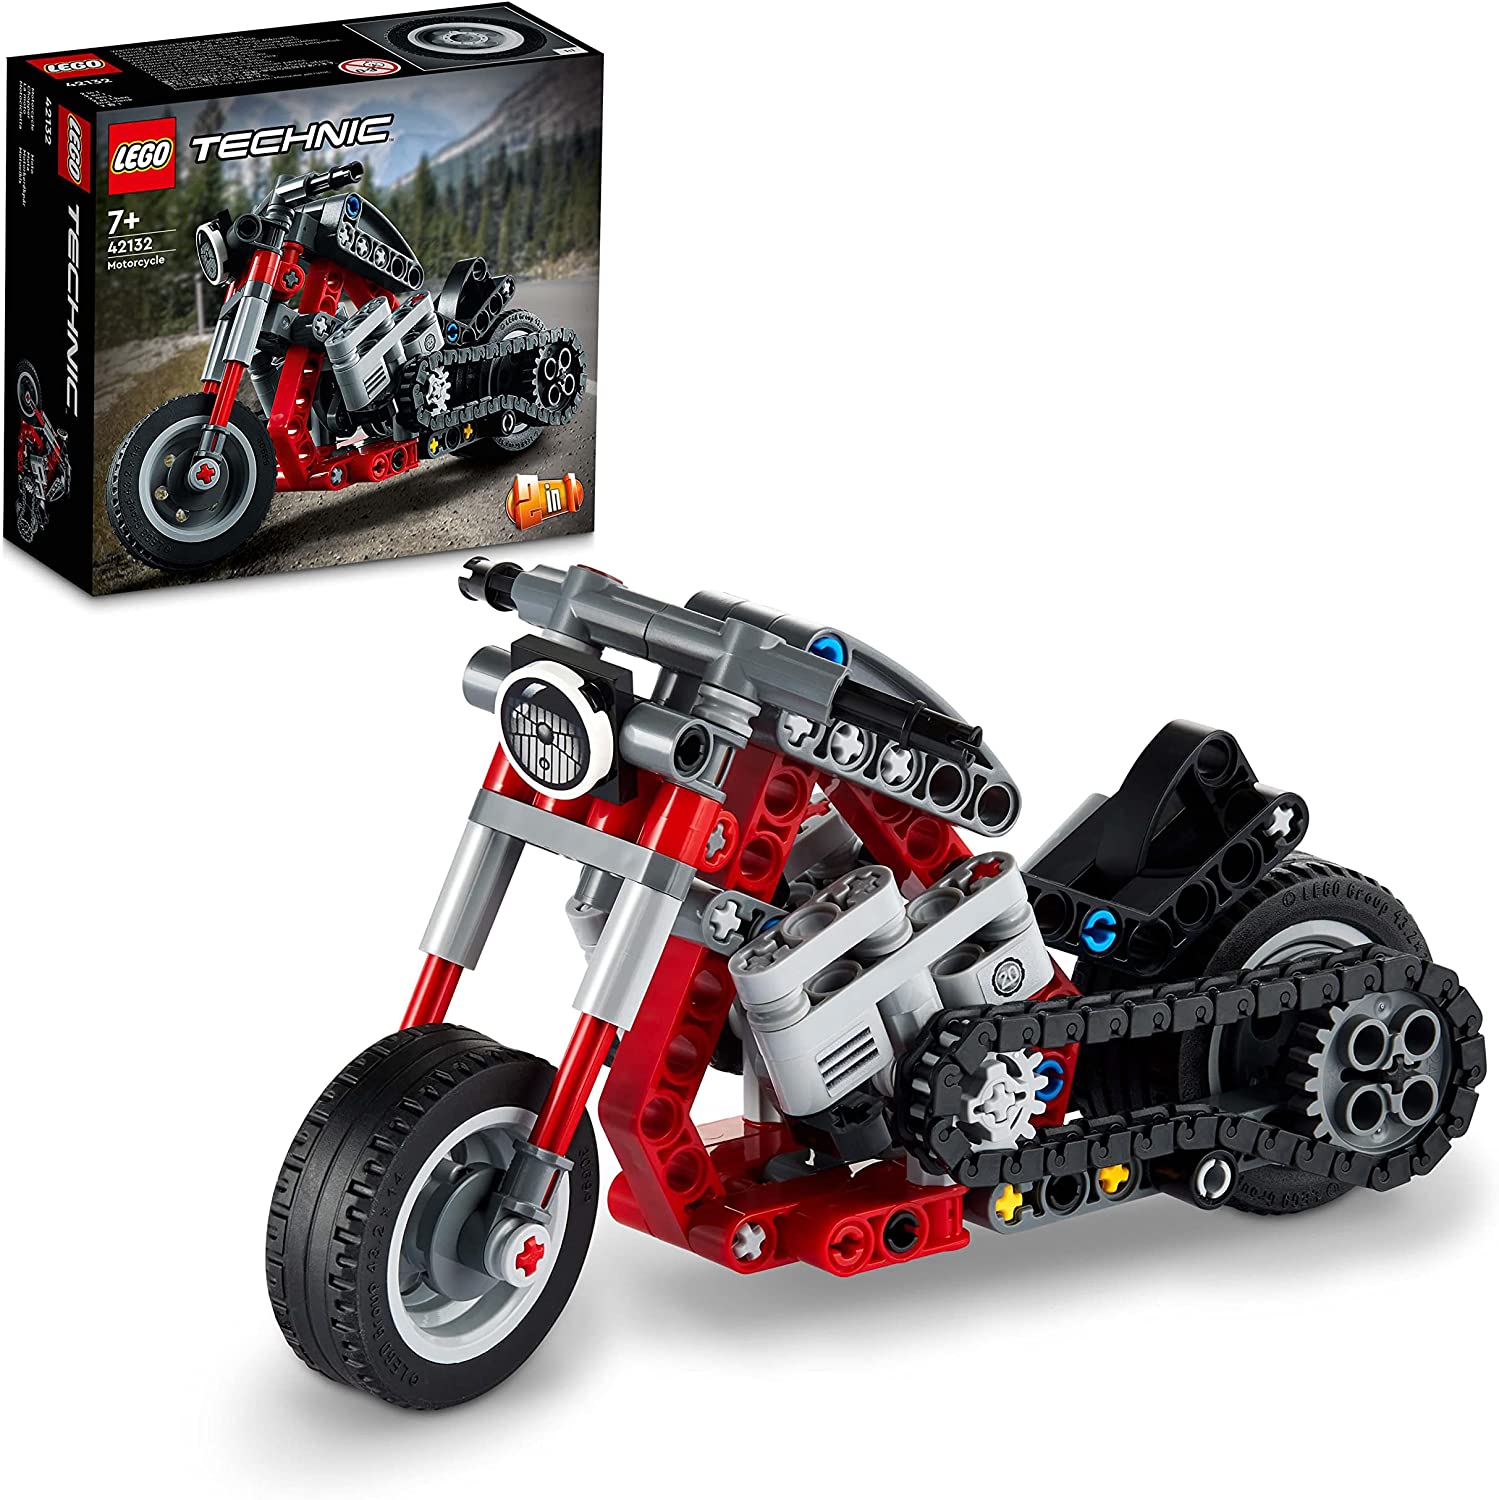 LEGO Technic Motocicletta 2 in 1, Modellino da Costruire, Moto